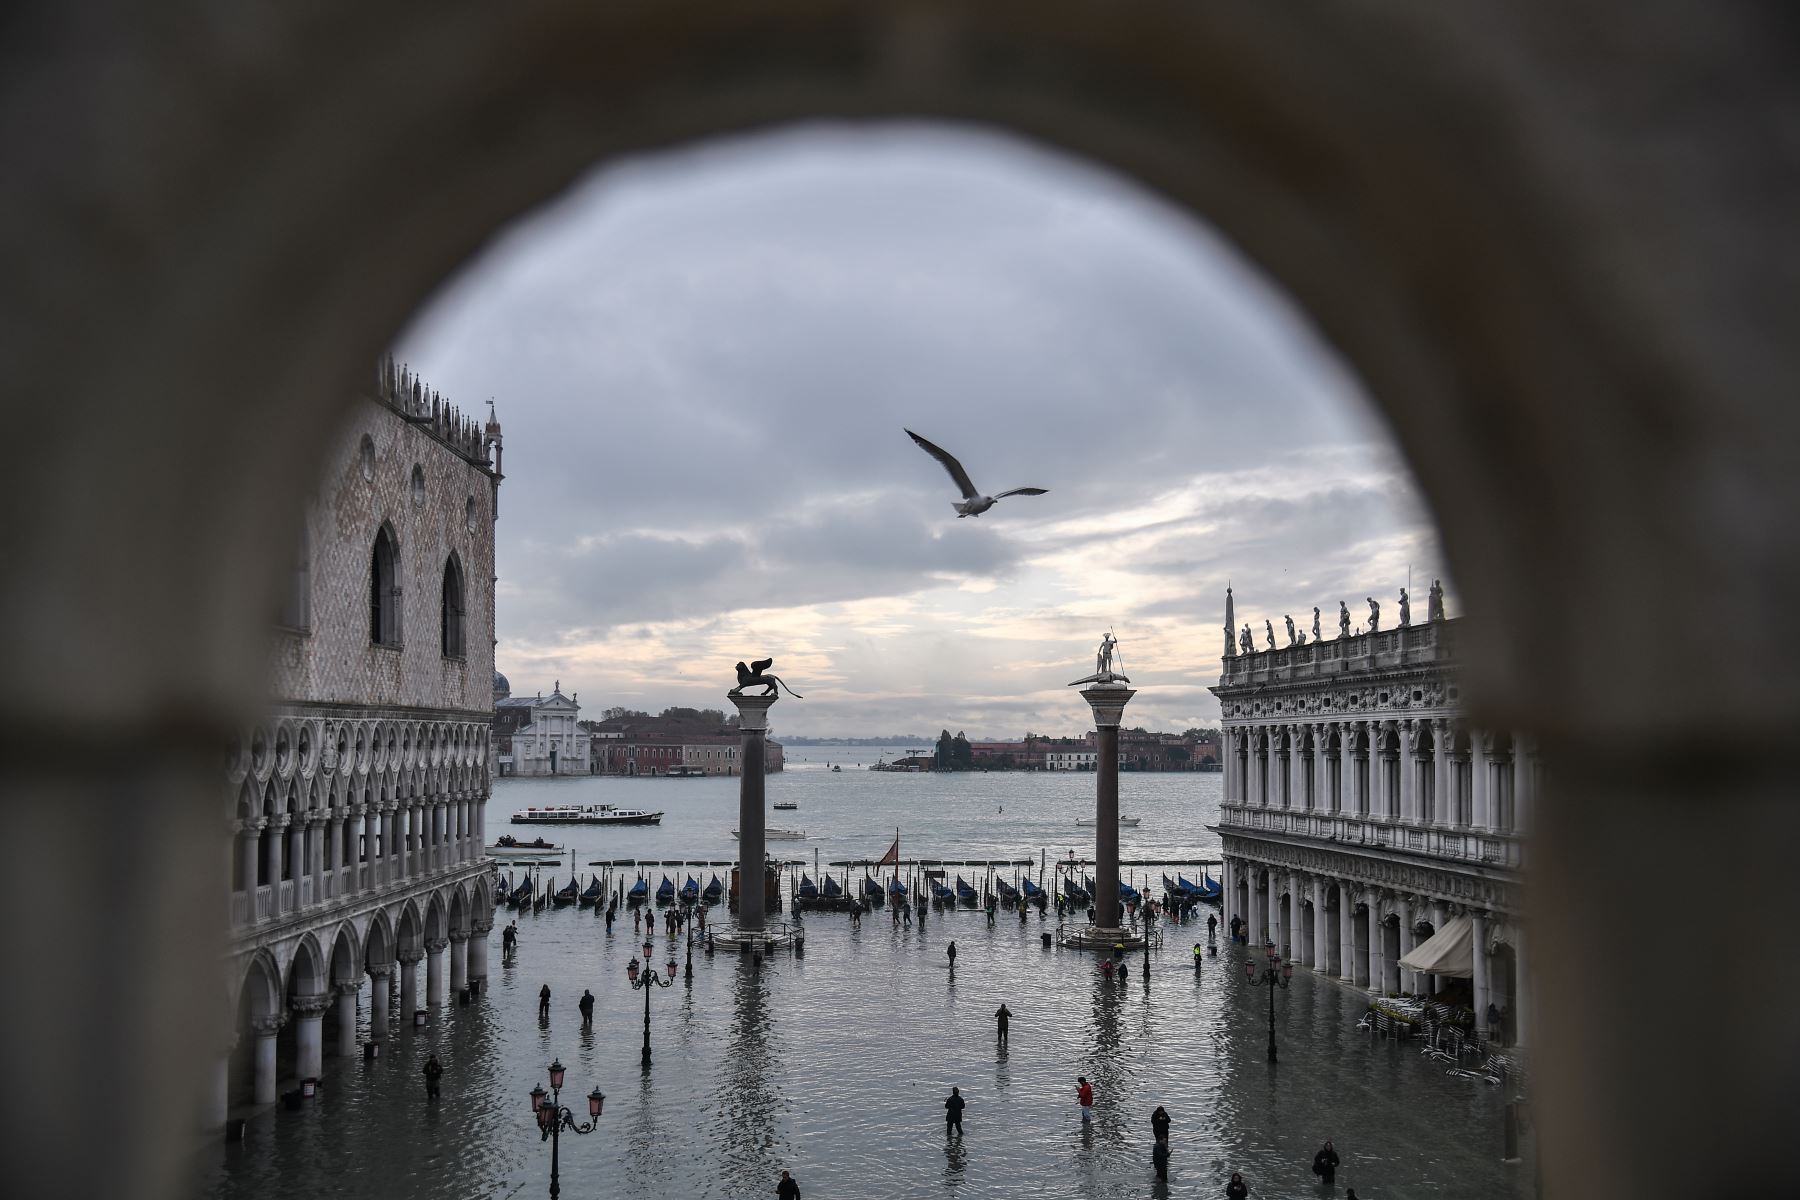 Una vista general muestra el Palacio Ducal con vistas a la inundada Plaza de San Marcos, la estatua de bronce alada del León de San Marcos, las góndolas y la laguna veneciana en la distancia después de una marea alta excepcional  durante la noche en Venecia.
Foto: AFP